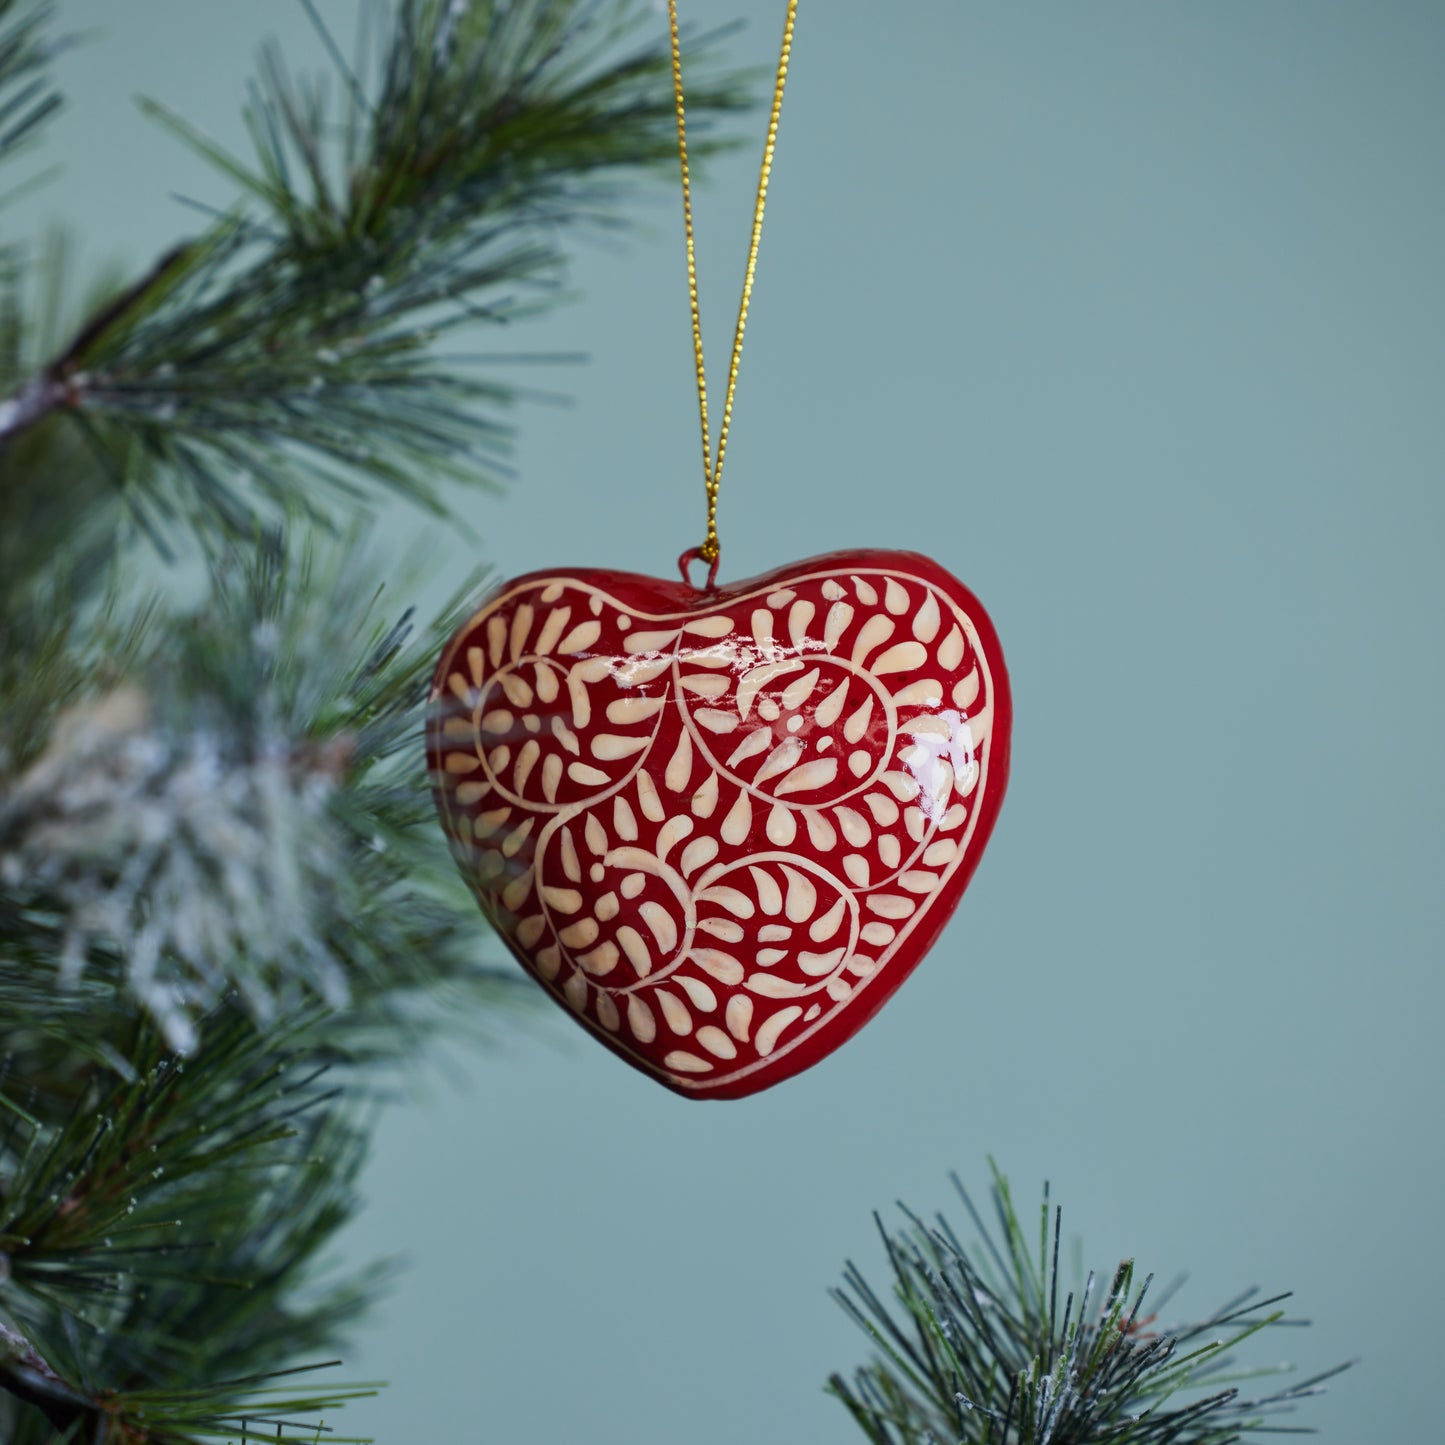 Paper Mache Heart Ornament